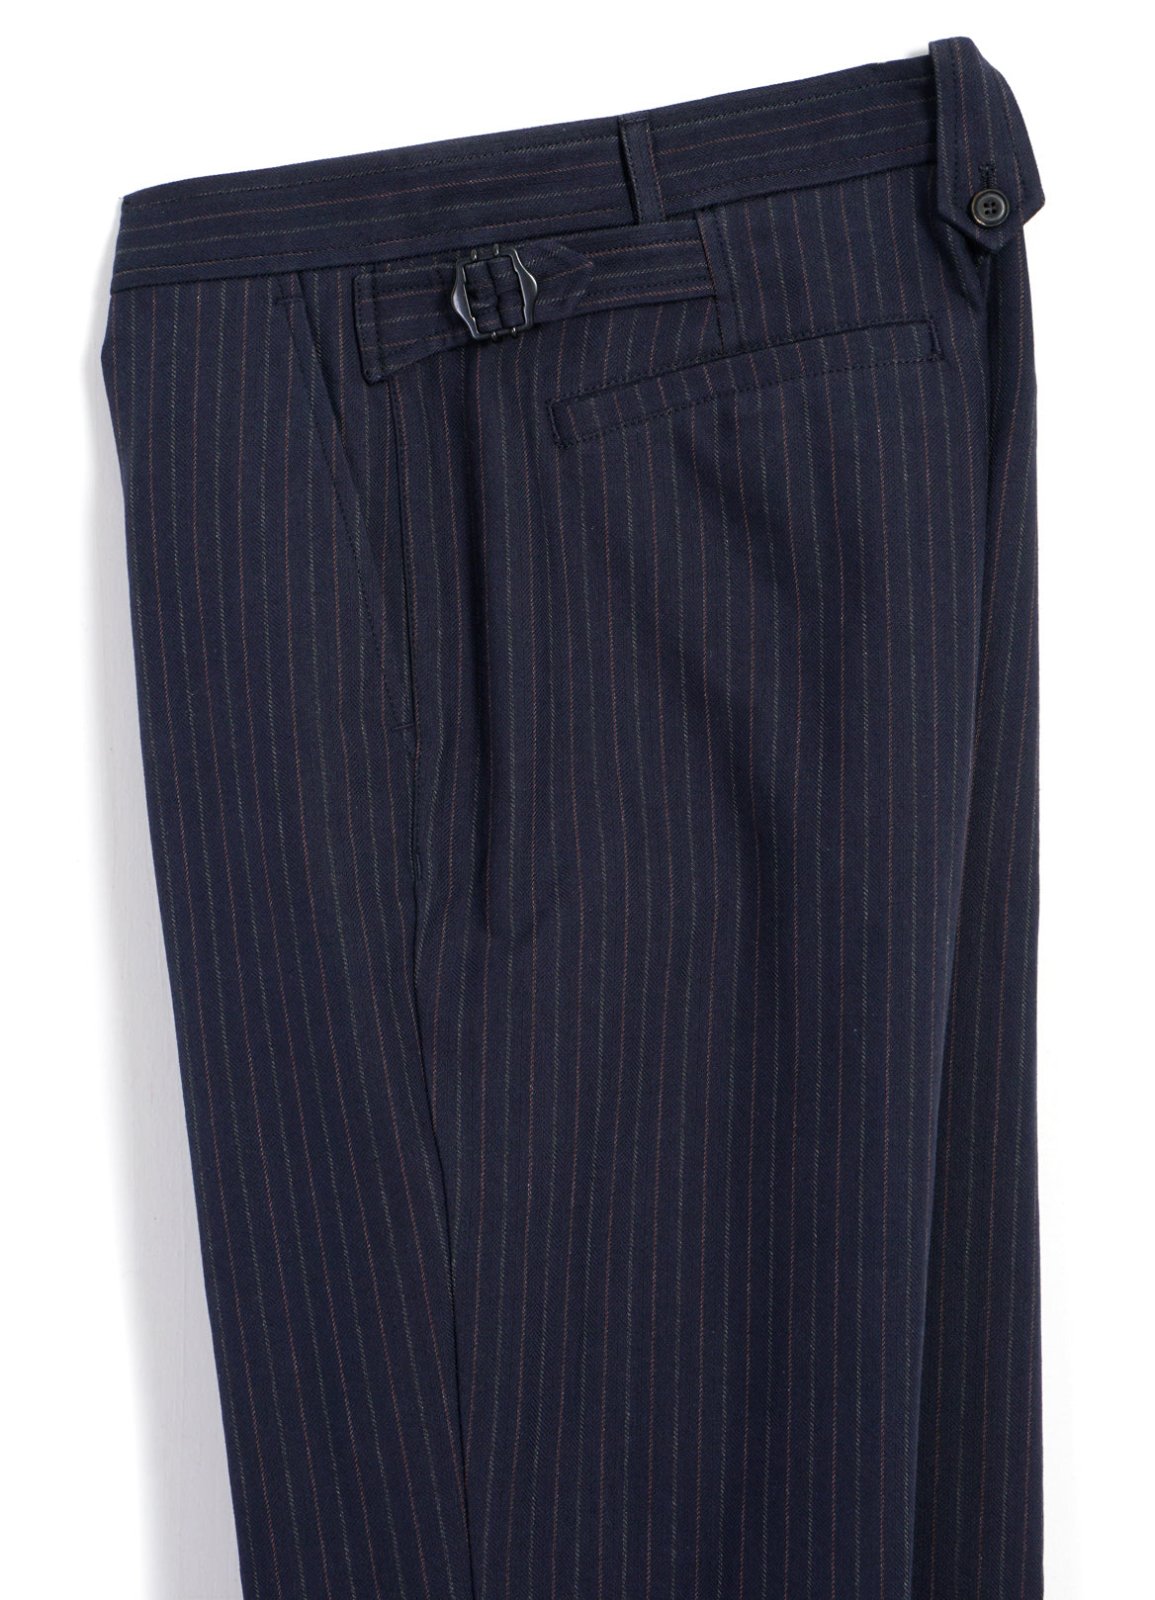 HANSEN GARMENTS - FINN | Side Buckle Regular Trousers | Blue Pin - HANSEN Garments